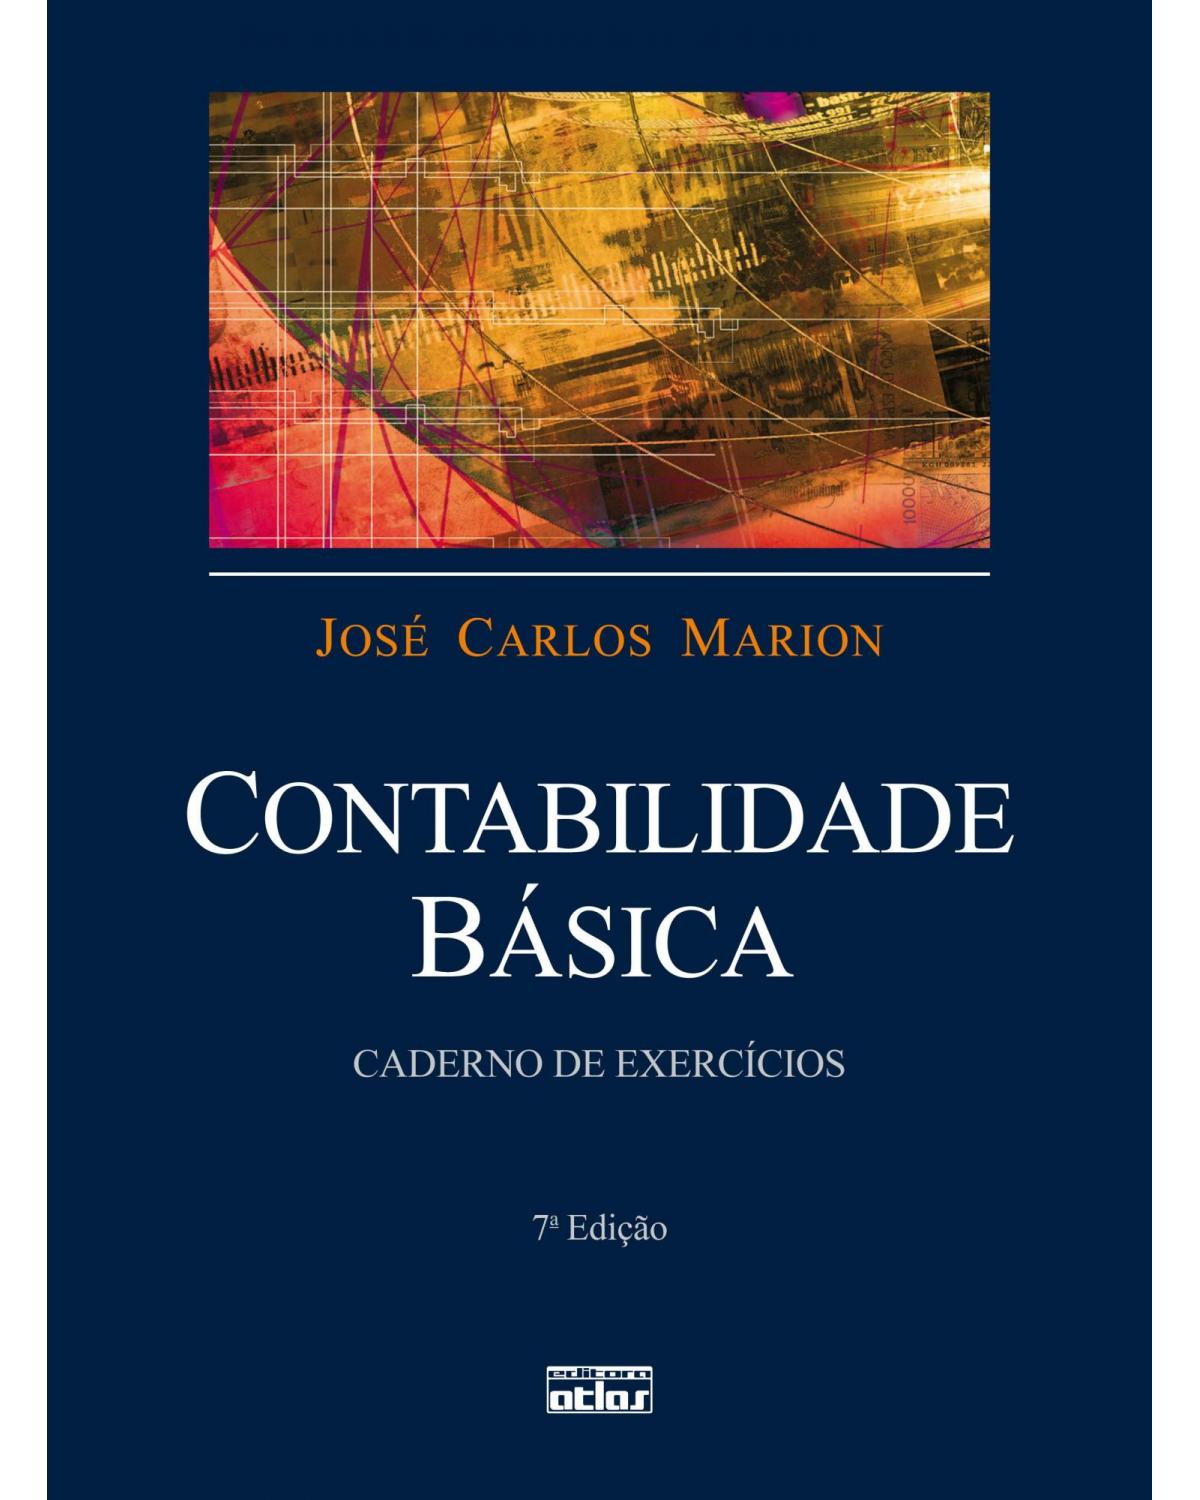 Contabilidade básica - Caderno de exercícios - 7ª Edição | 2010